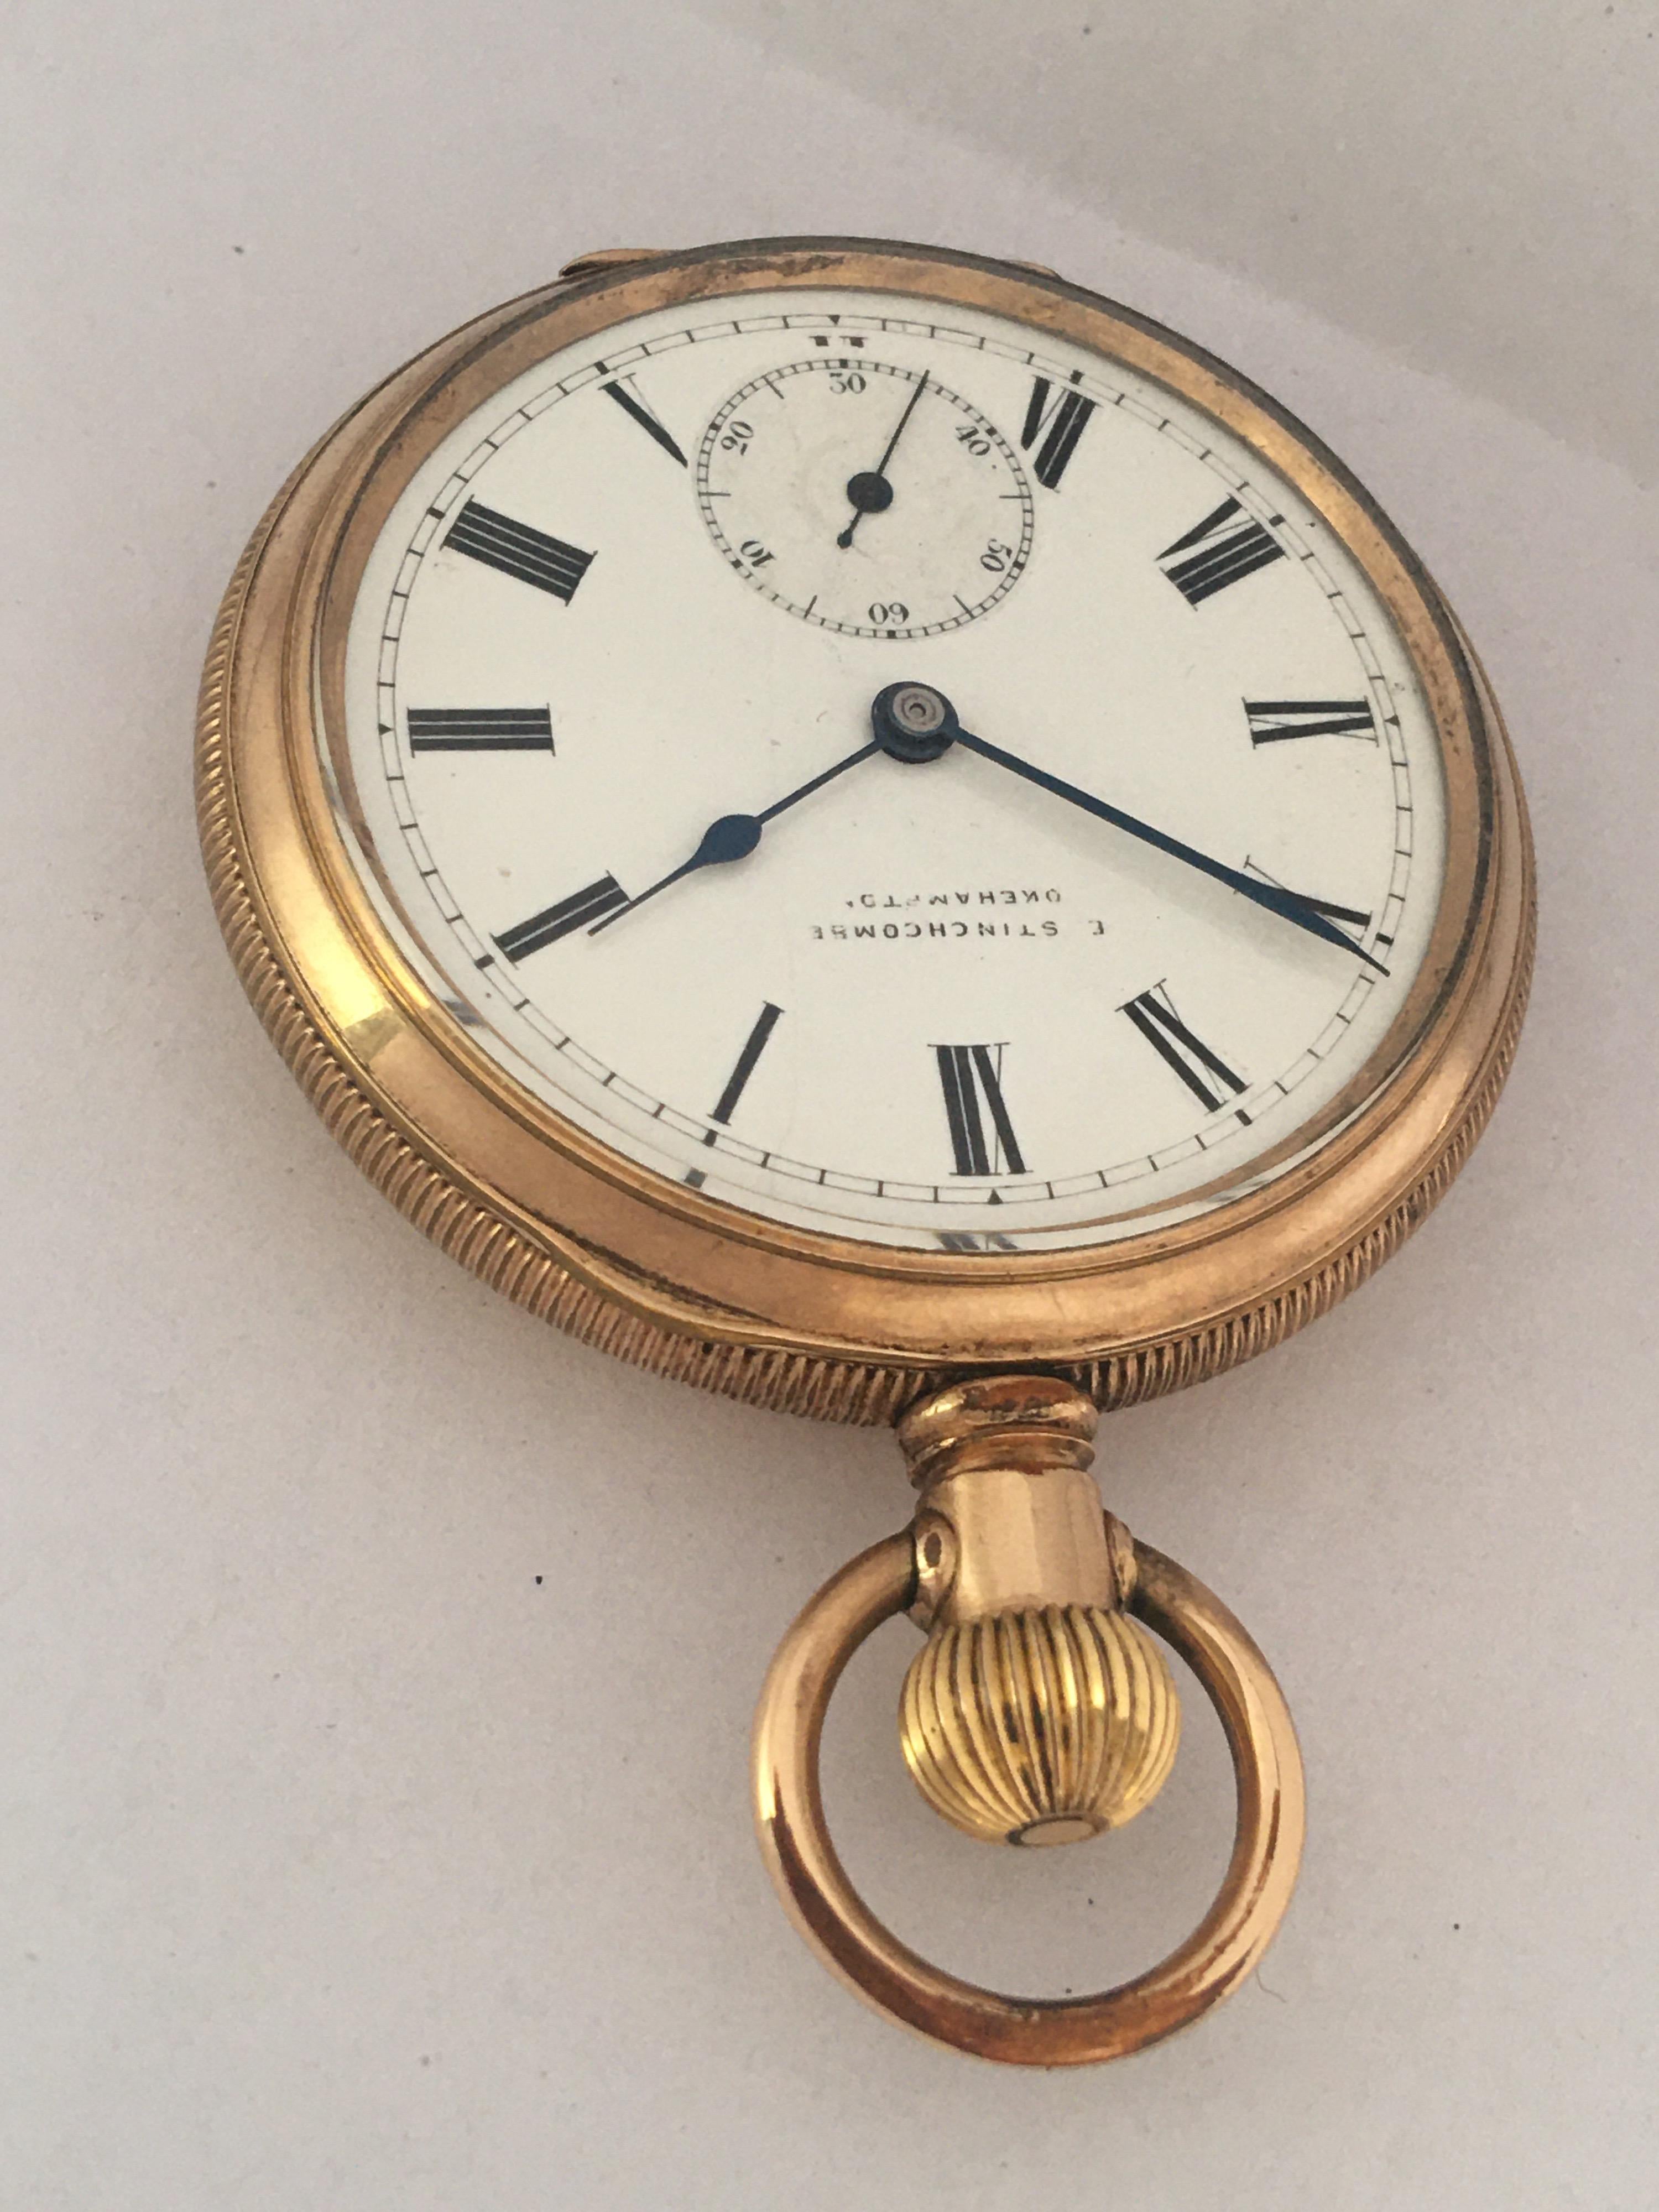 vintage gold pocket watch